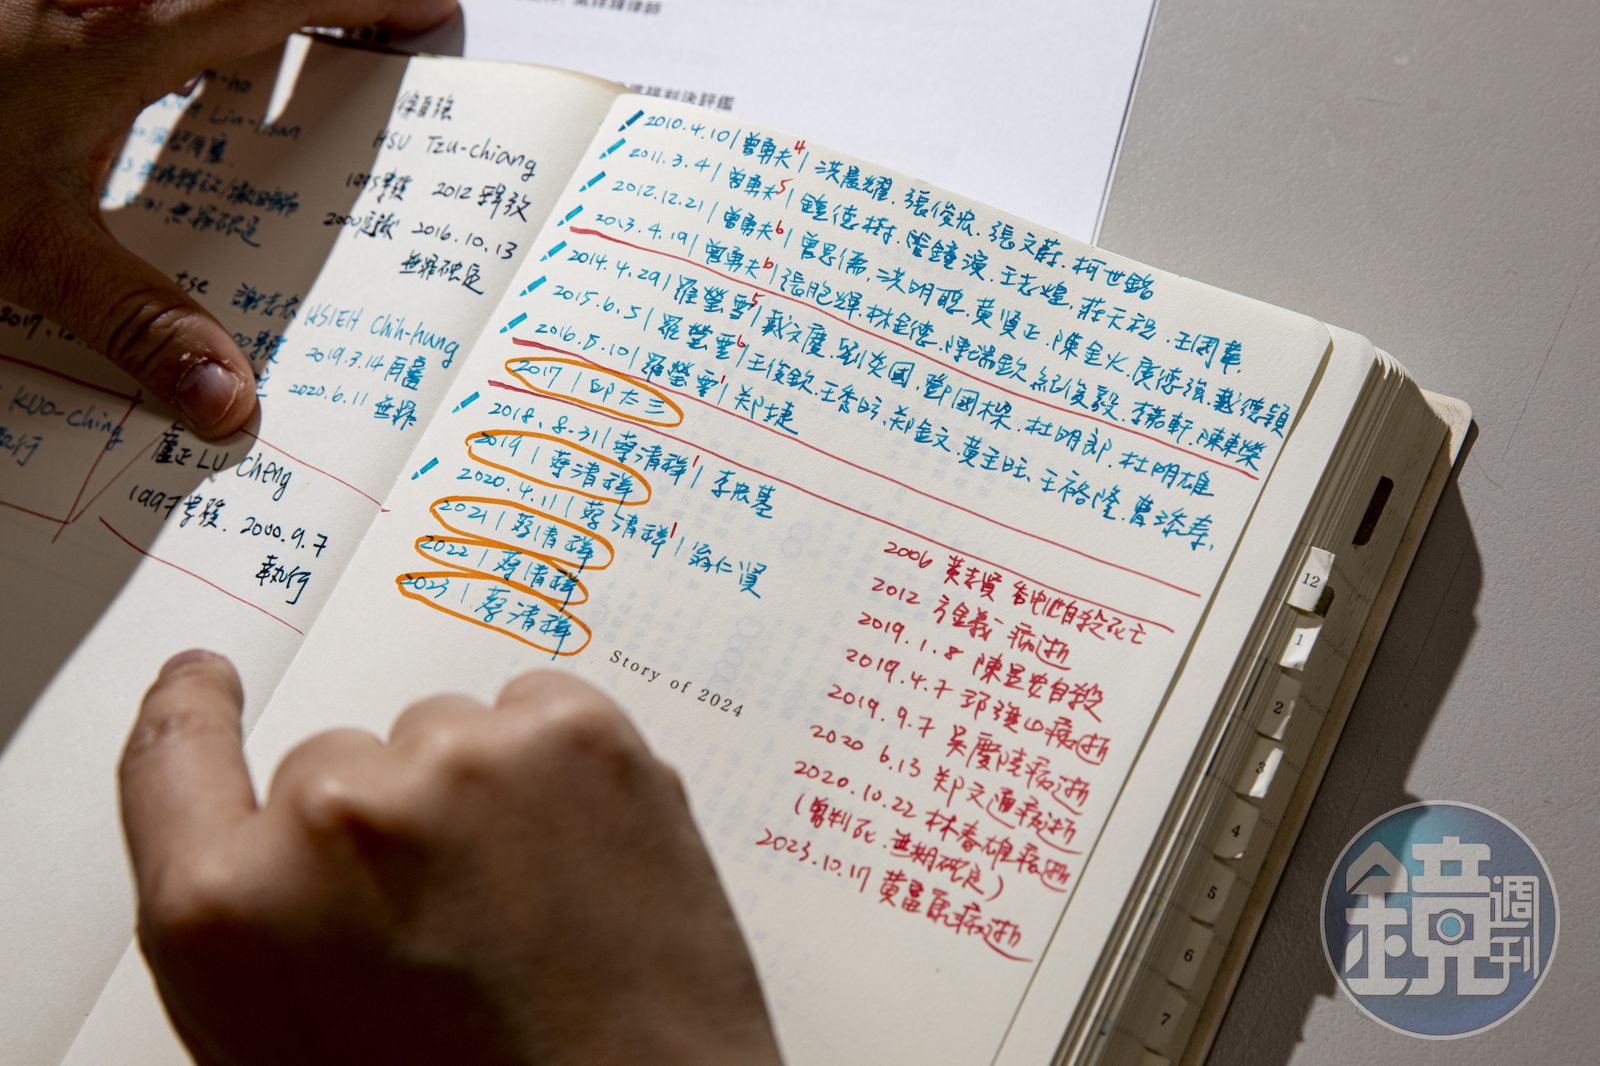 林欣怡的筆記本記下每年被執行的死刑犯姓名，以及獄中病逝、自殺的死刑犯